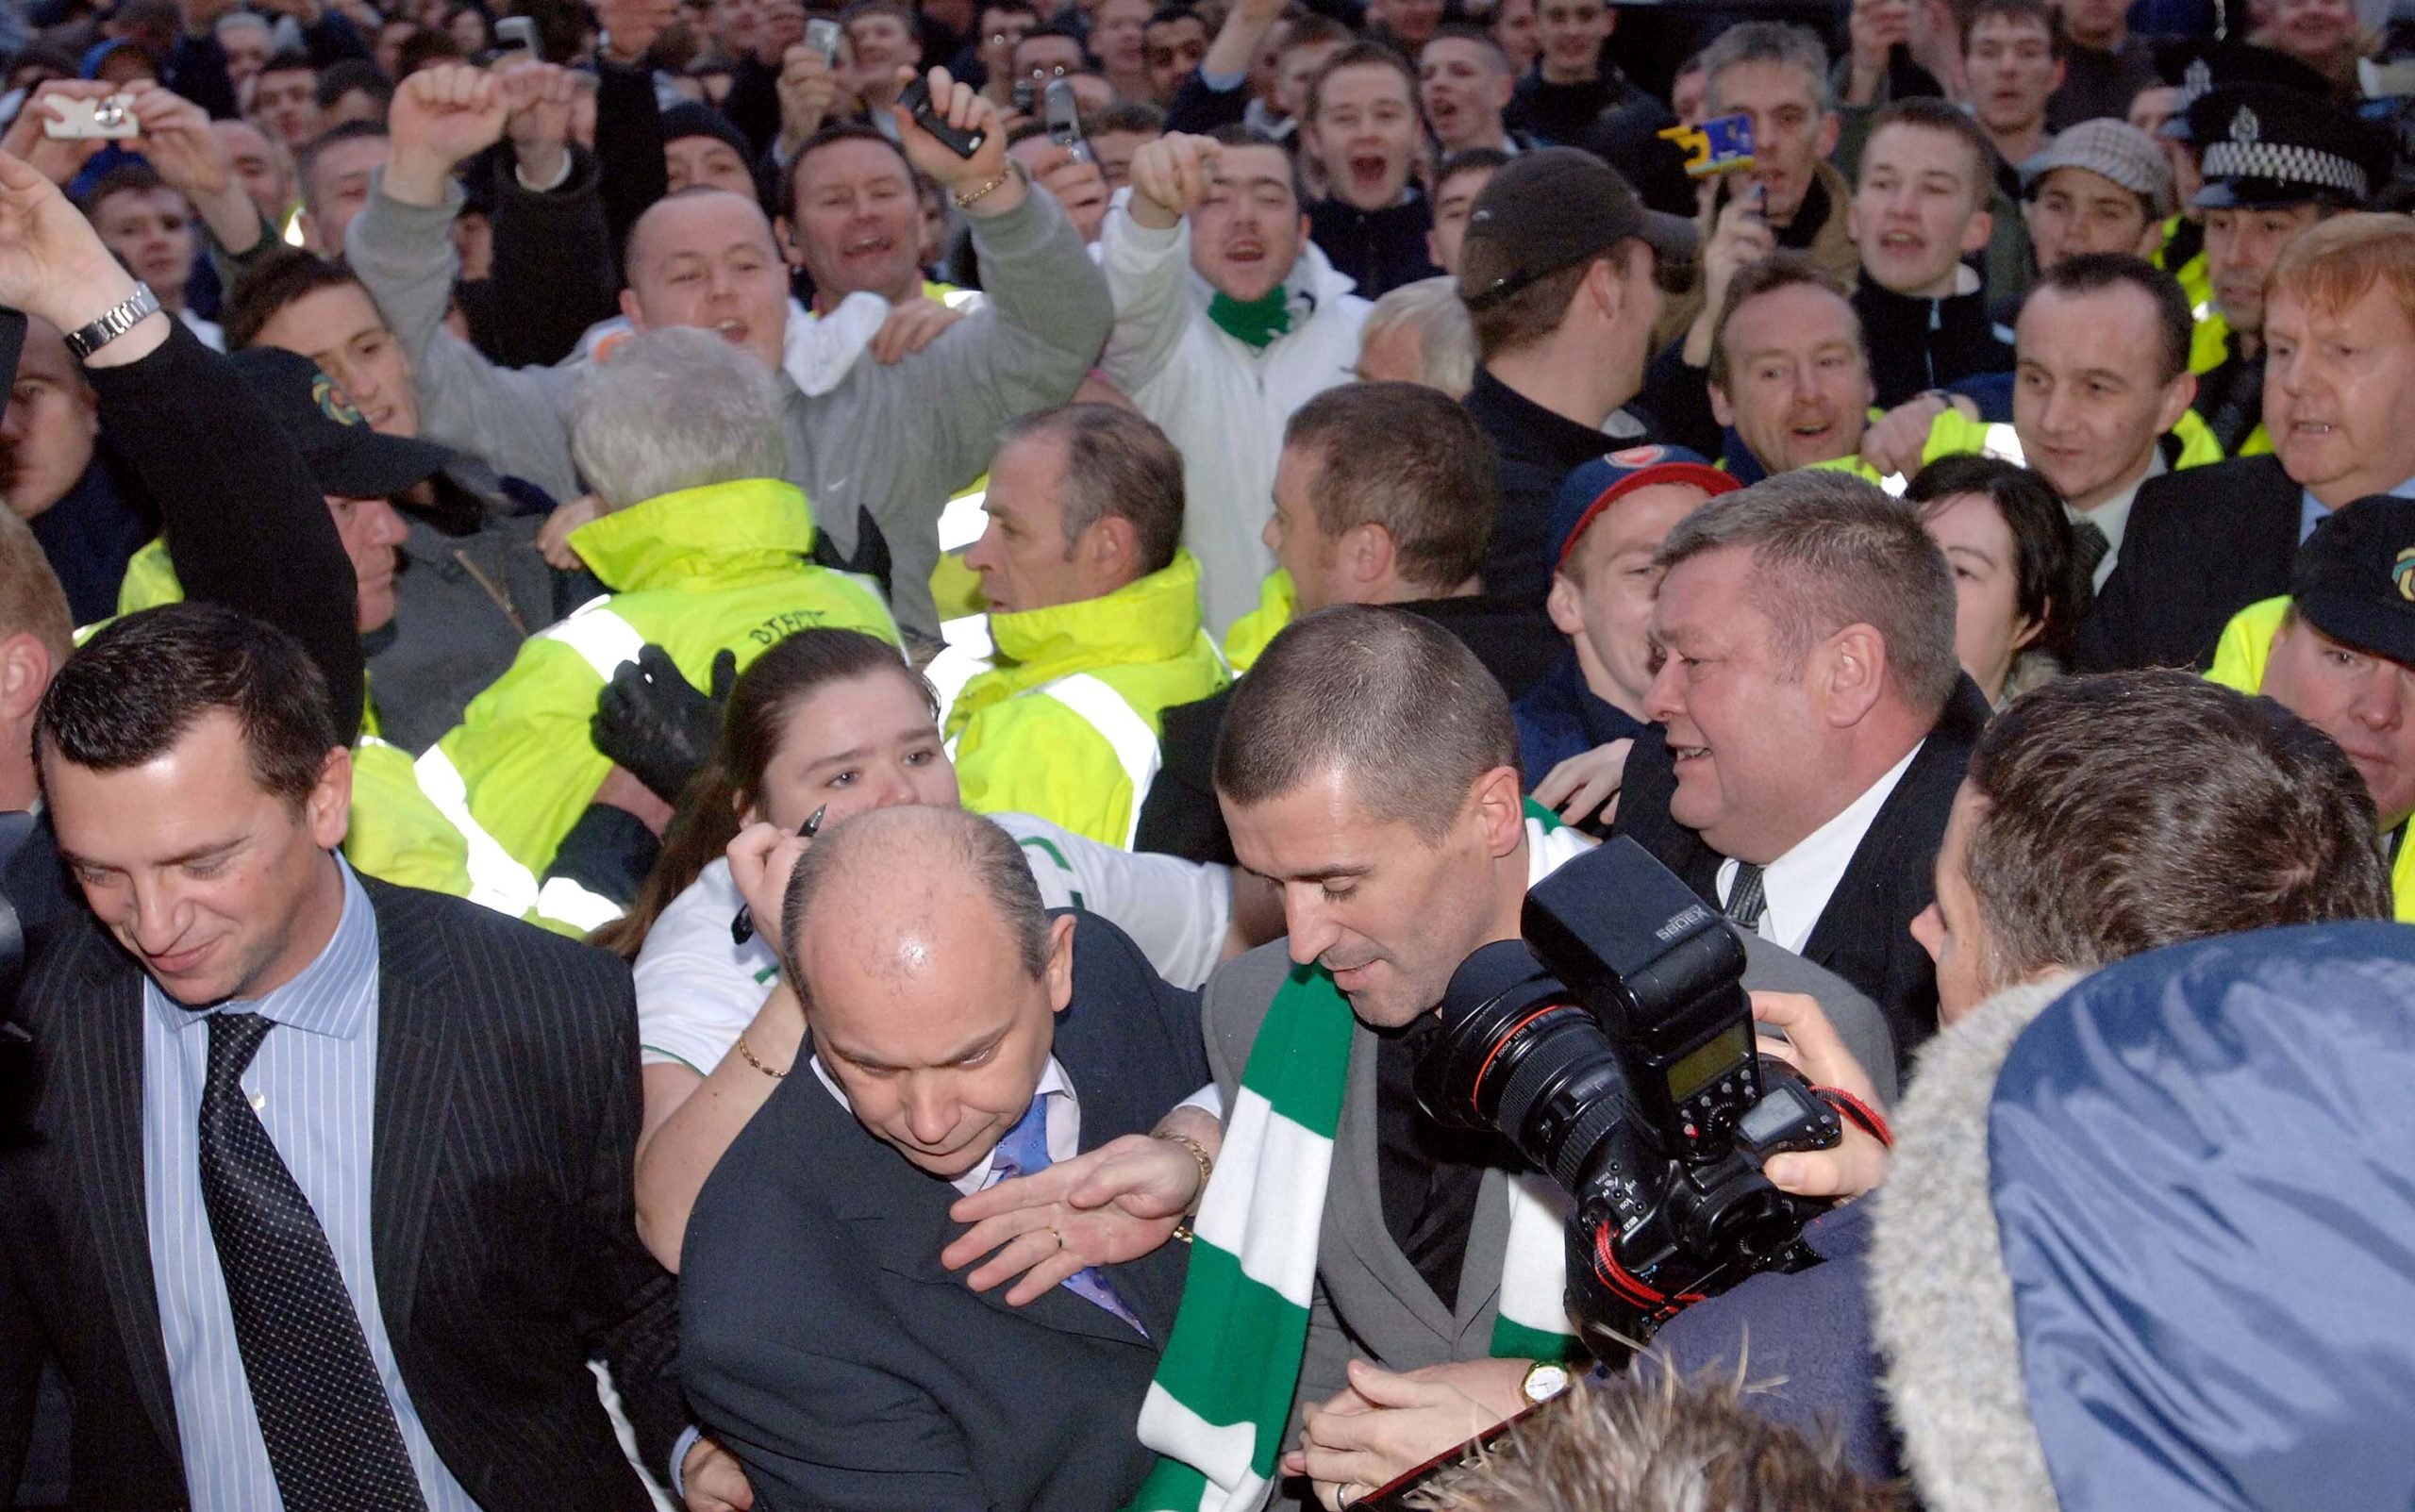 Roy Keane Celtic